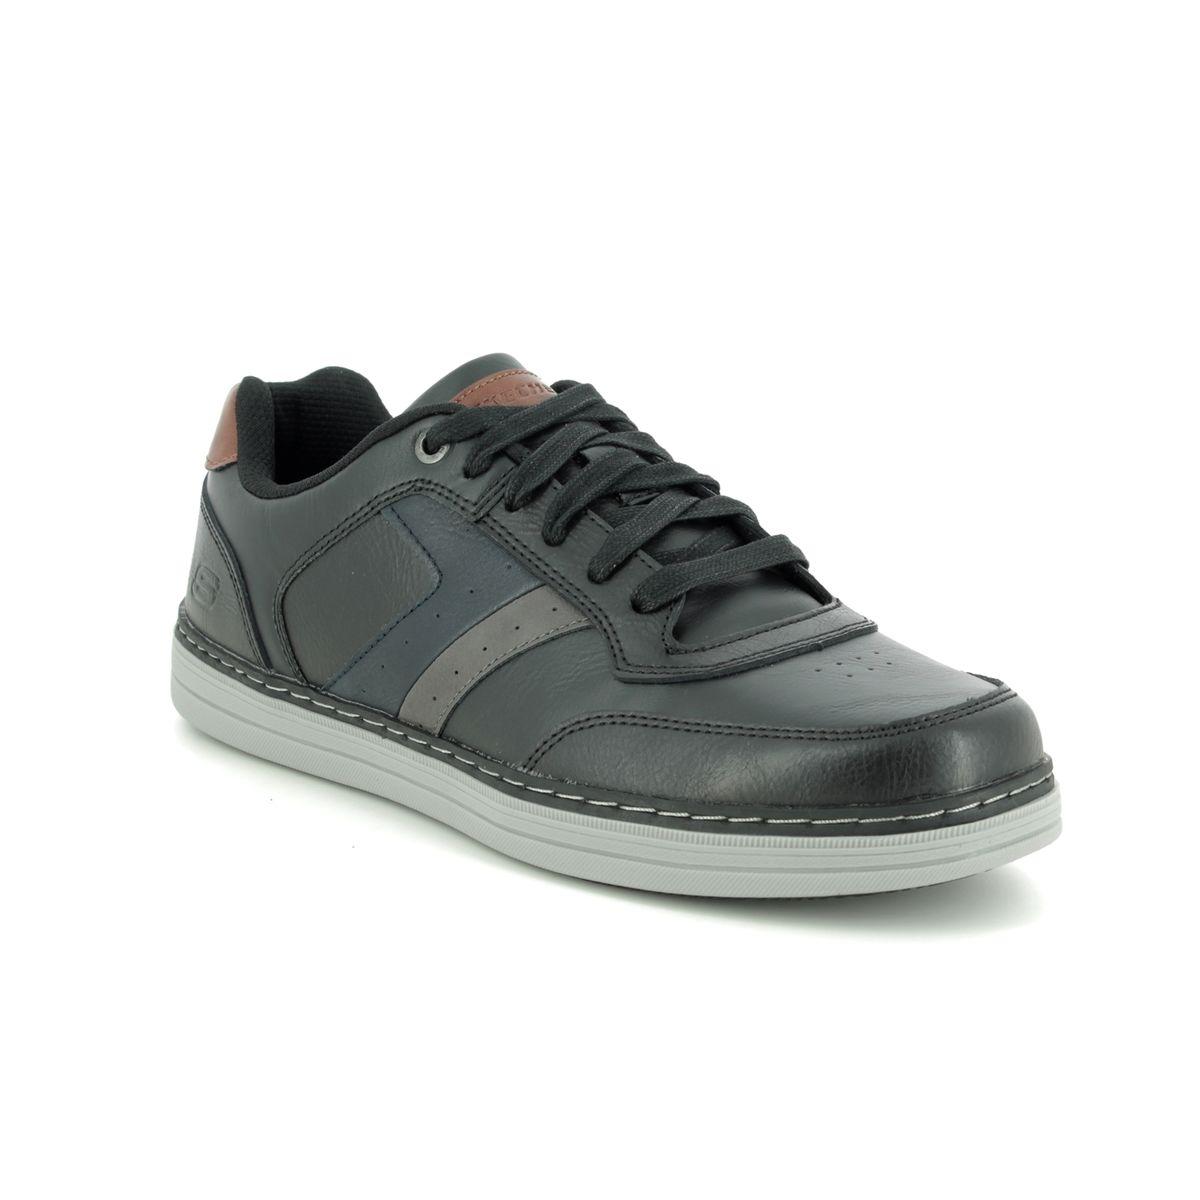 Skechers Heston 66413 BLK Black comfort shoes